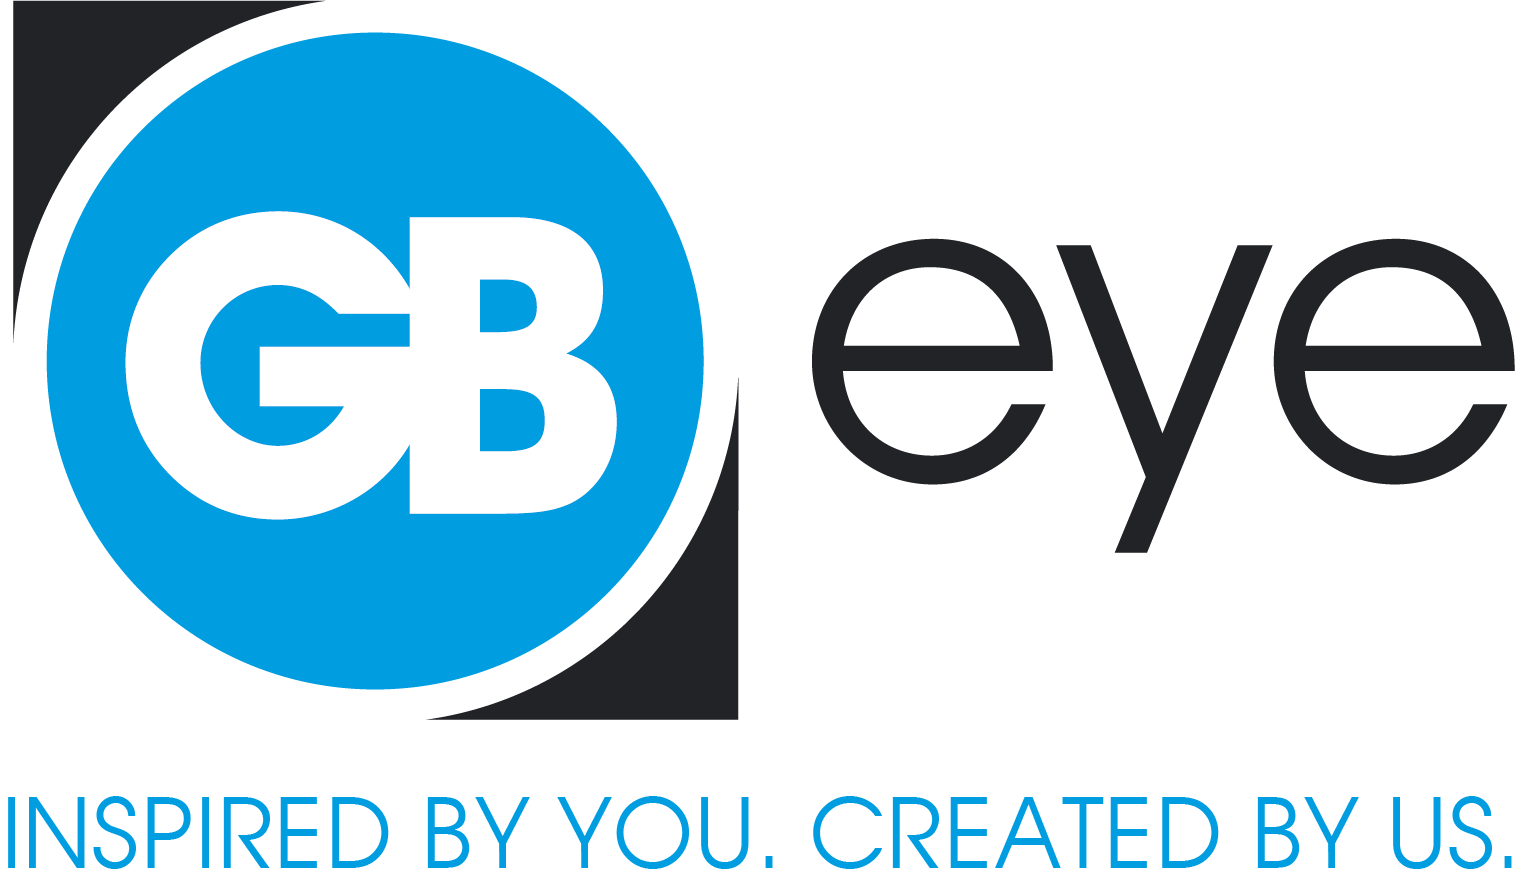 GB Eye